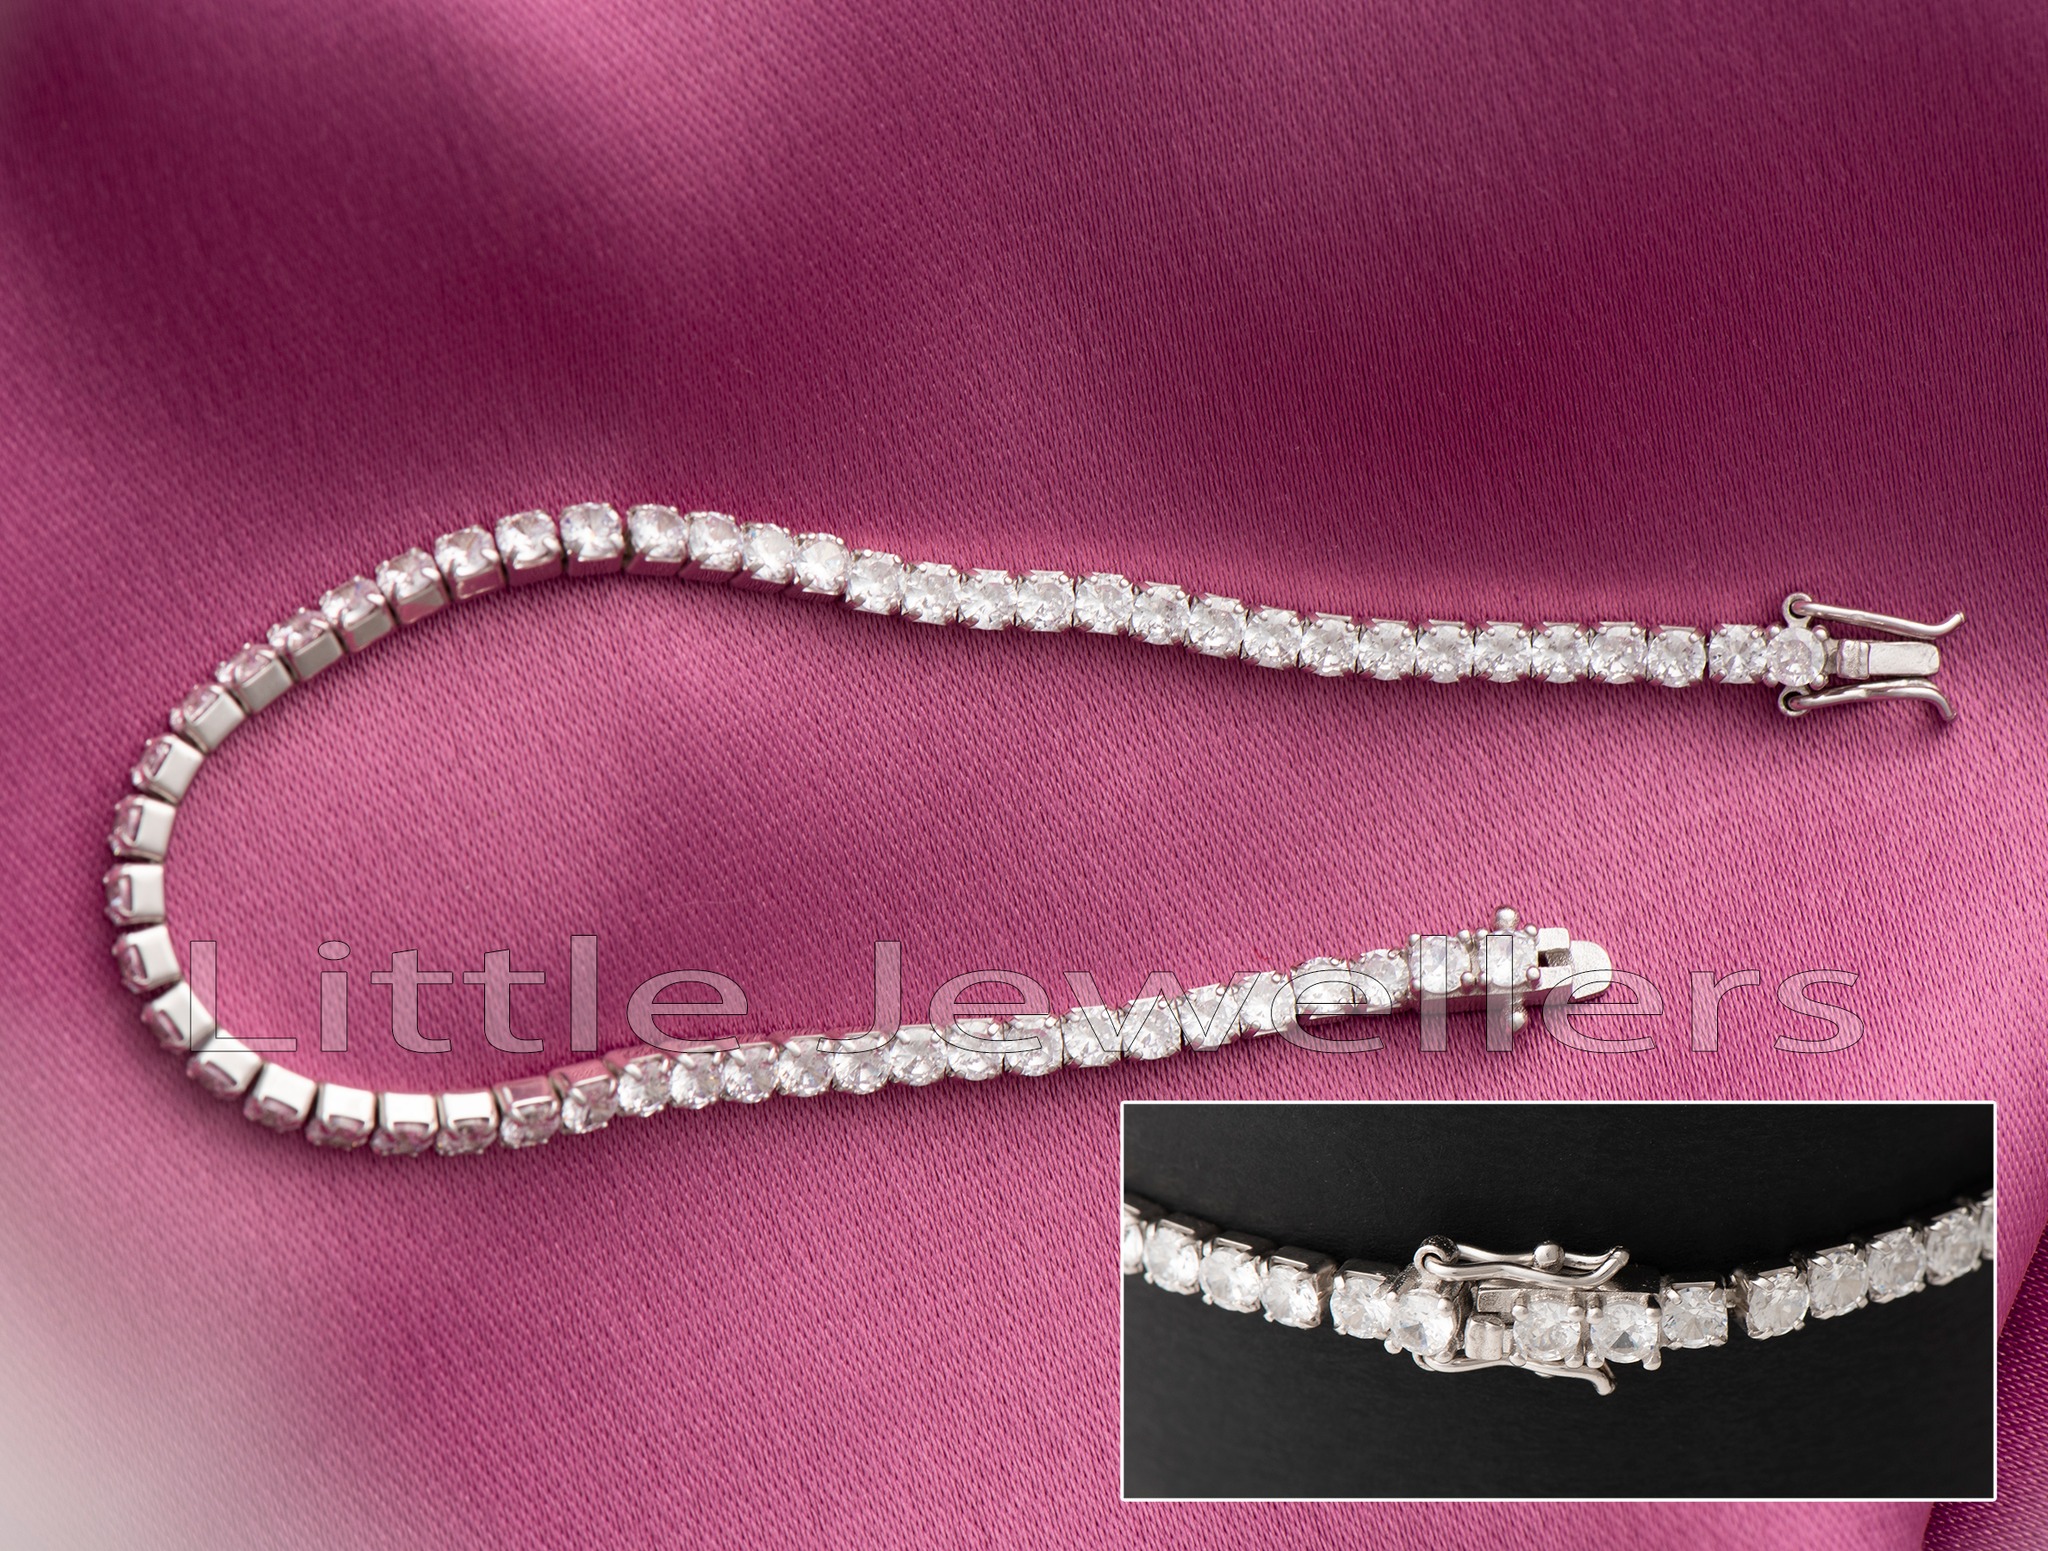 Timeless Elegance: Luminous Sterling Silver Bracelet for Valentine's Day